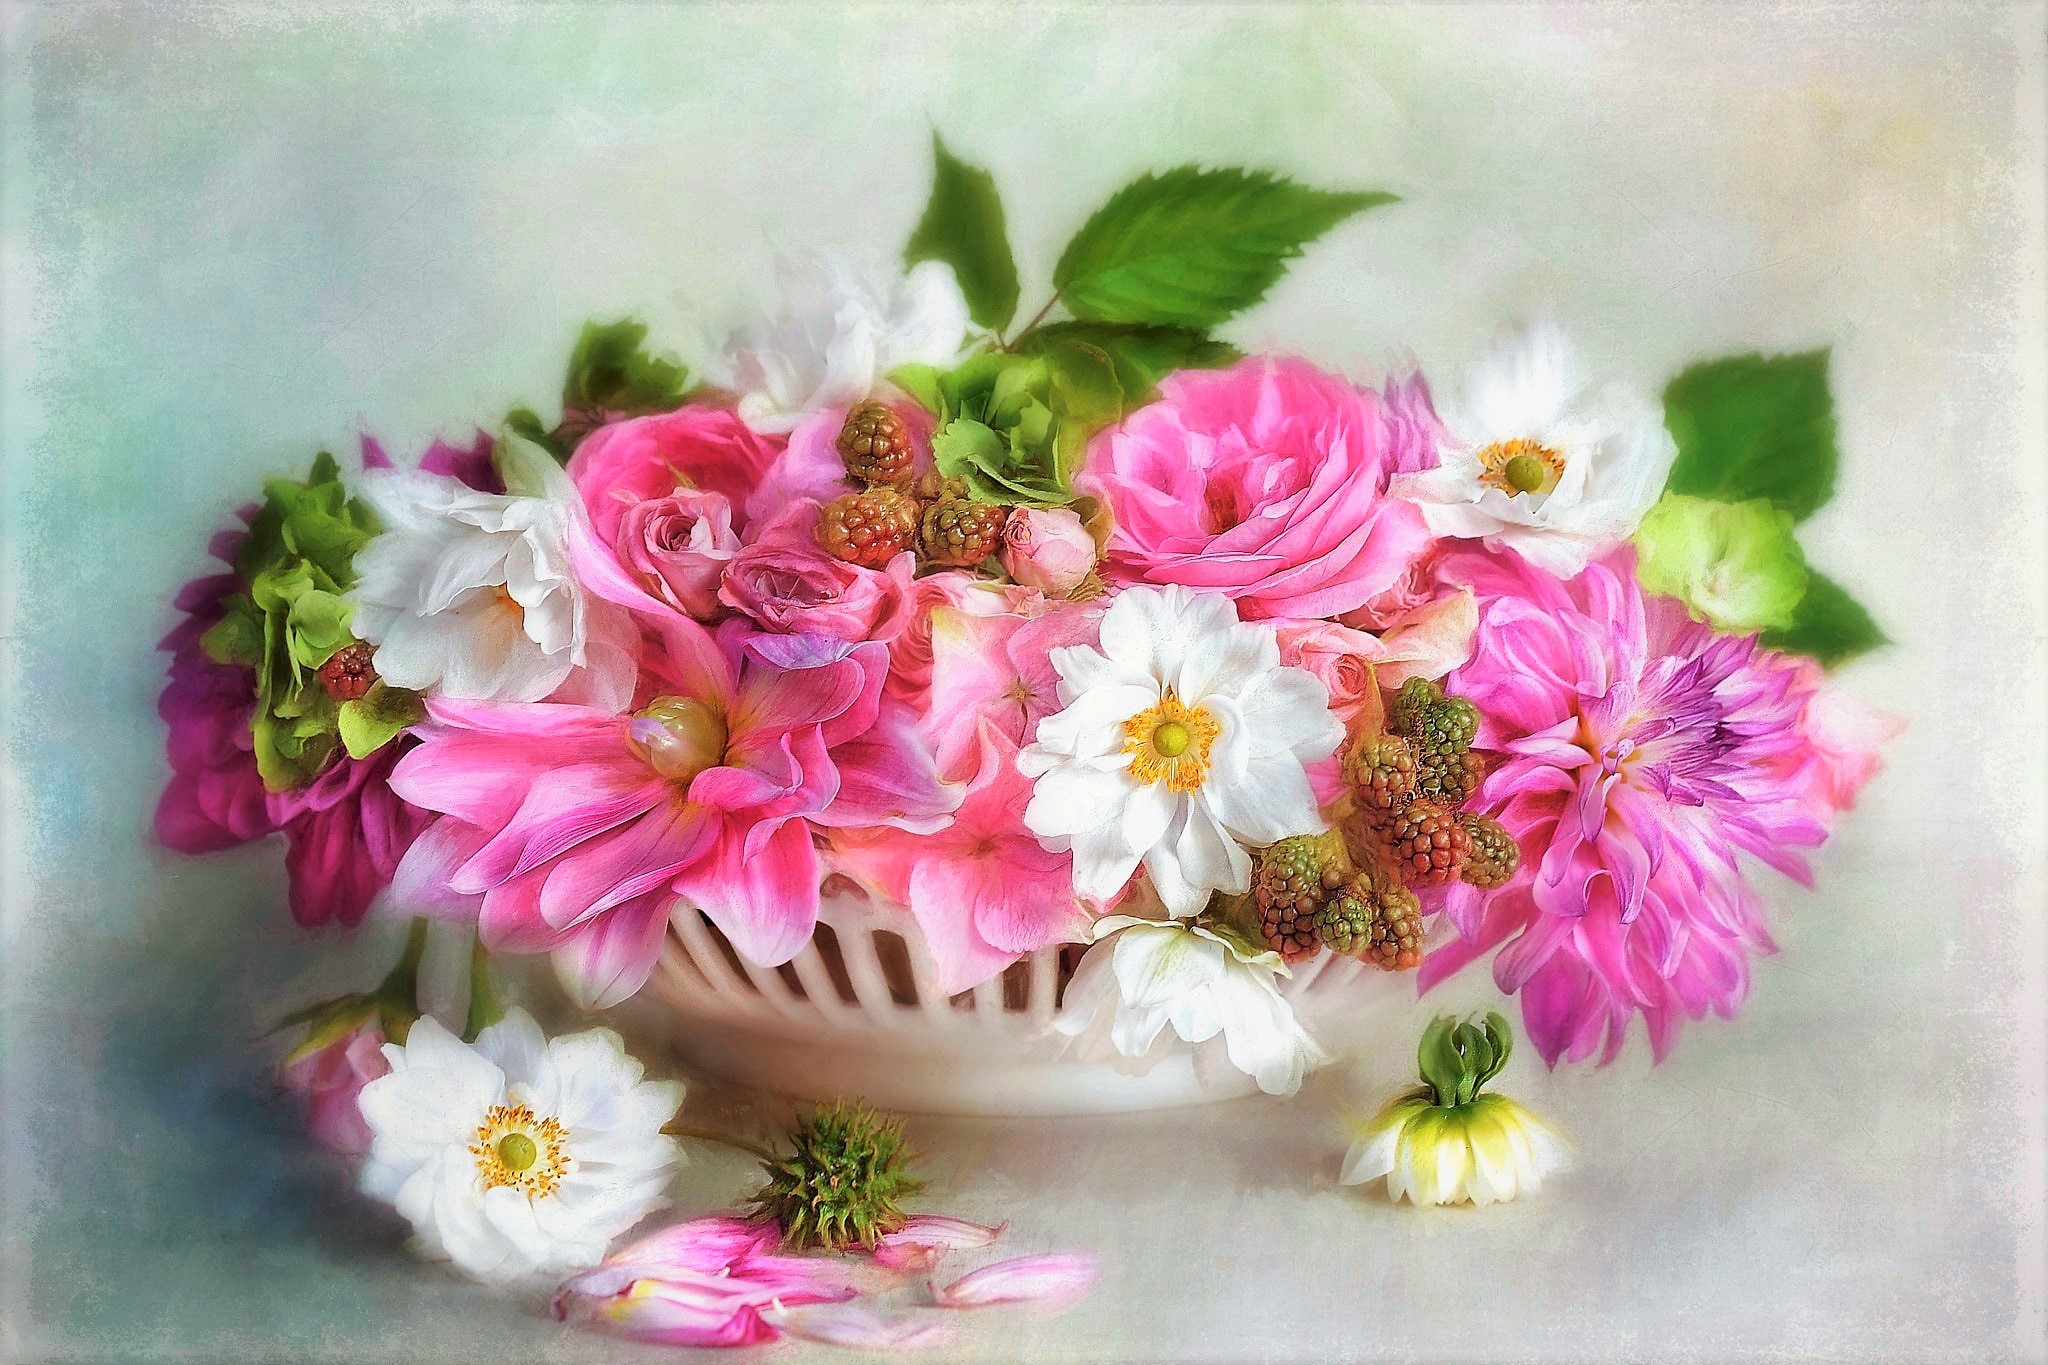 artistic, painting, bowl, flower, pink flower, still life, white flower